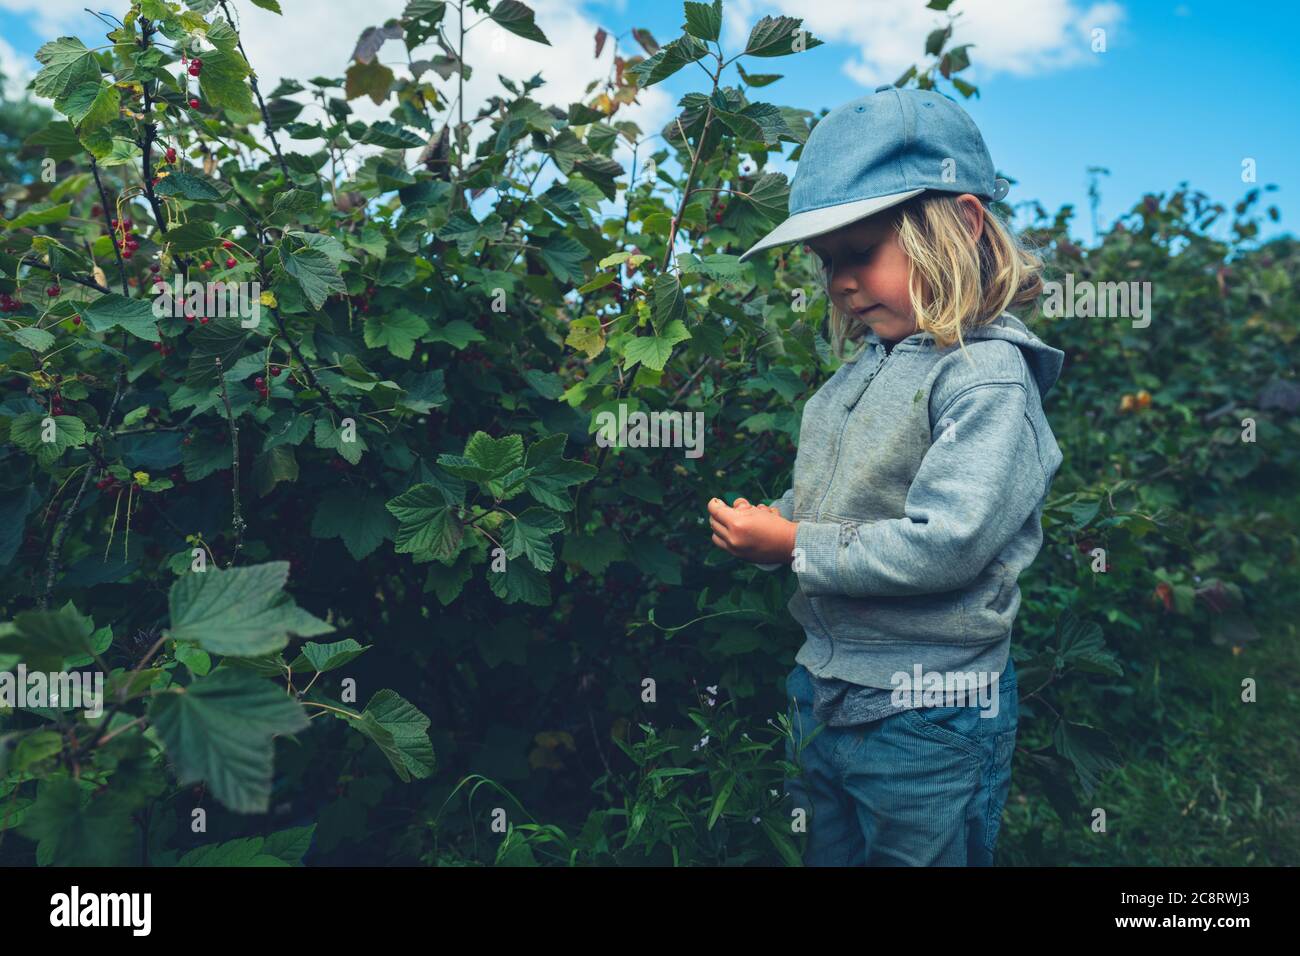 Un petit préchooler avec un panier est de cueillir des baies de buissons de fruits Banque D'Images